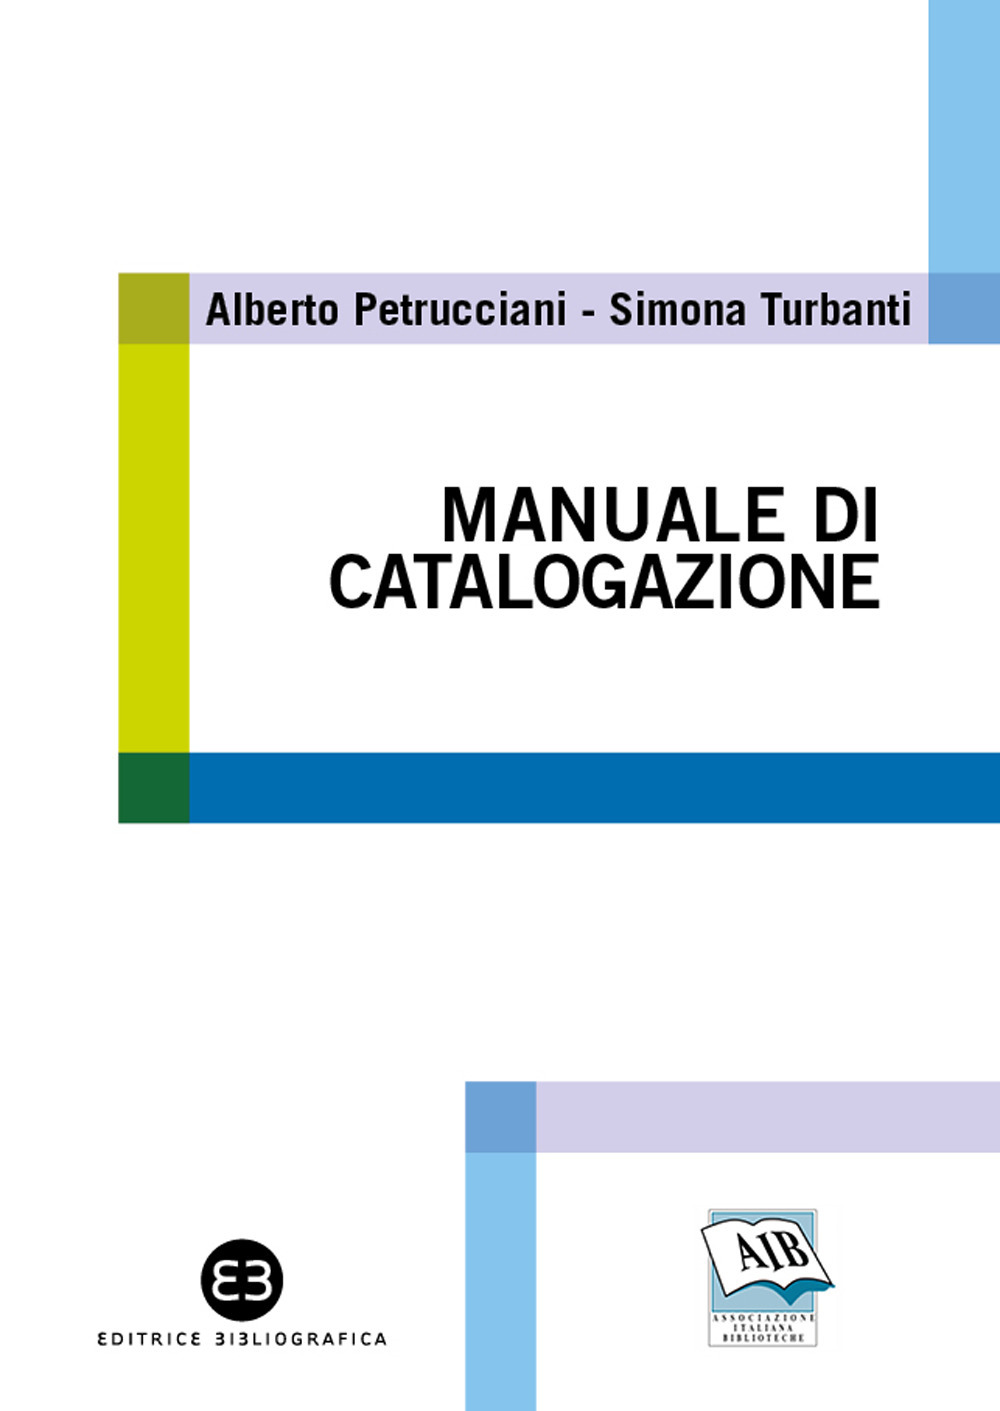 Libri Alberto Petrucciani / Simona Turbanti - Manuale Di Catalogazione NUOVO SIGILLATO, EDIZIONE DEL 04/02/2021 SUBITO DISPONIBILE